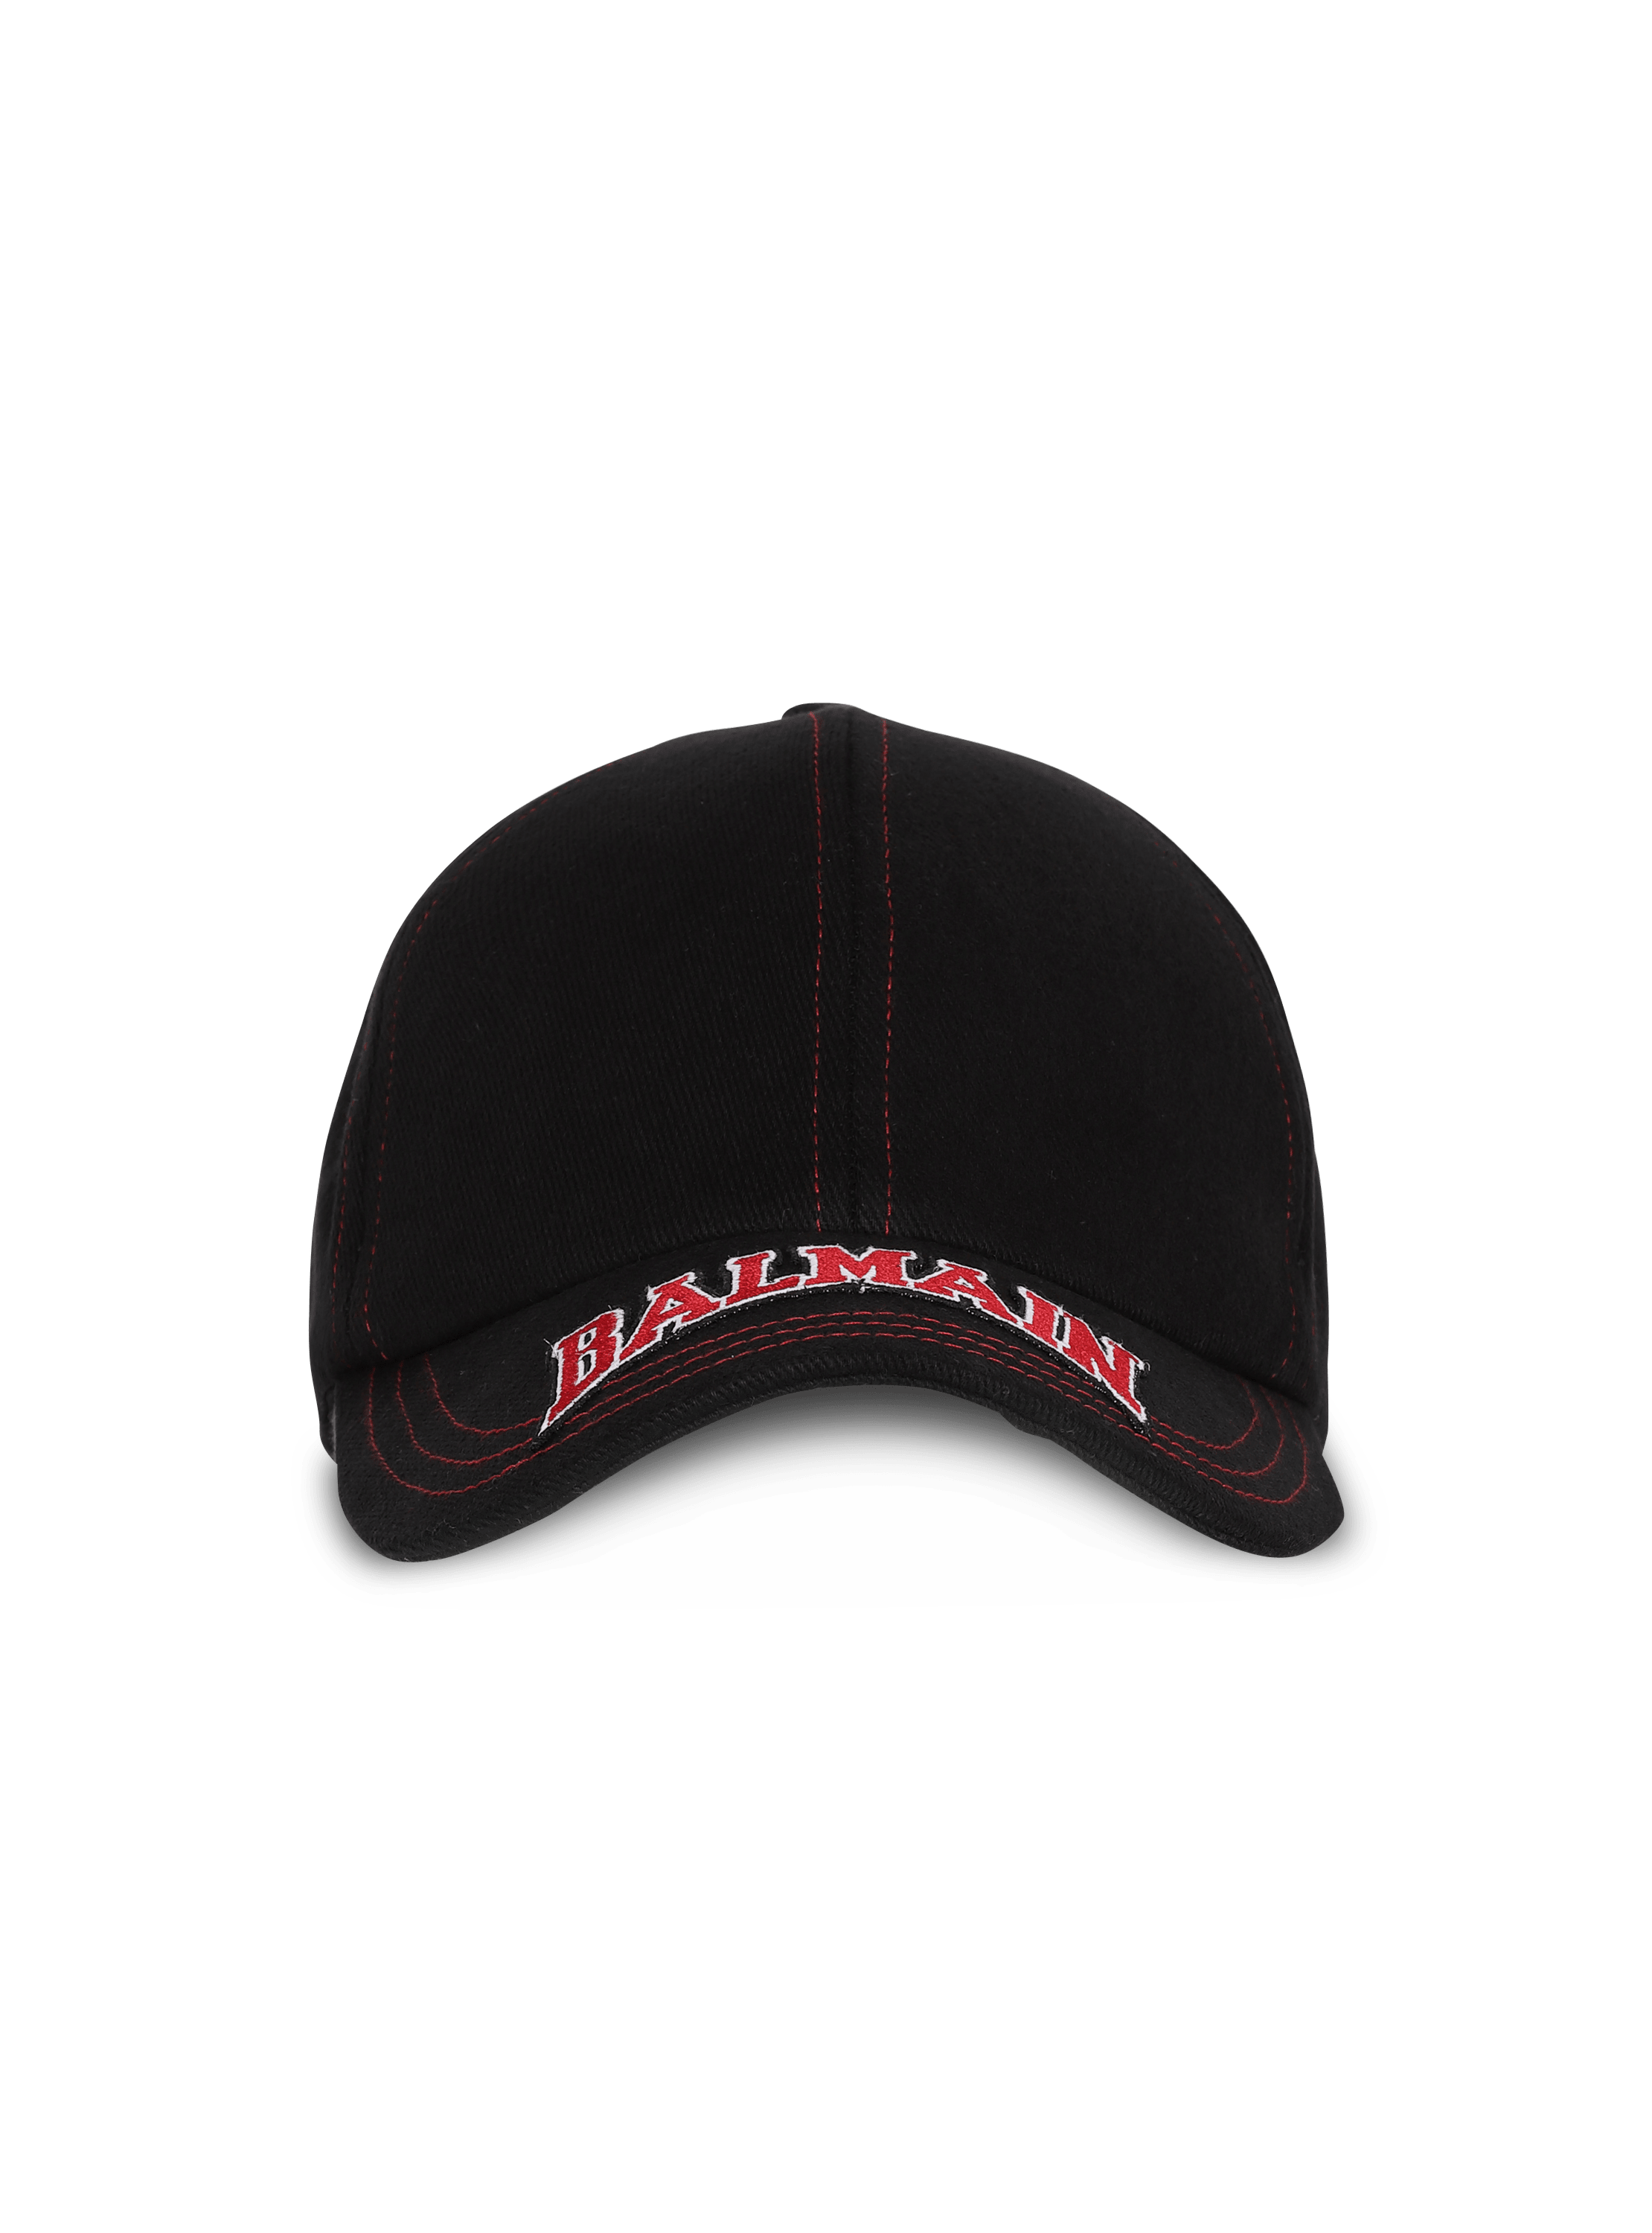 Balmain x Puma - Embroidered cap